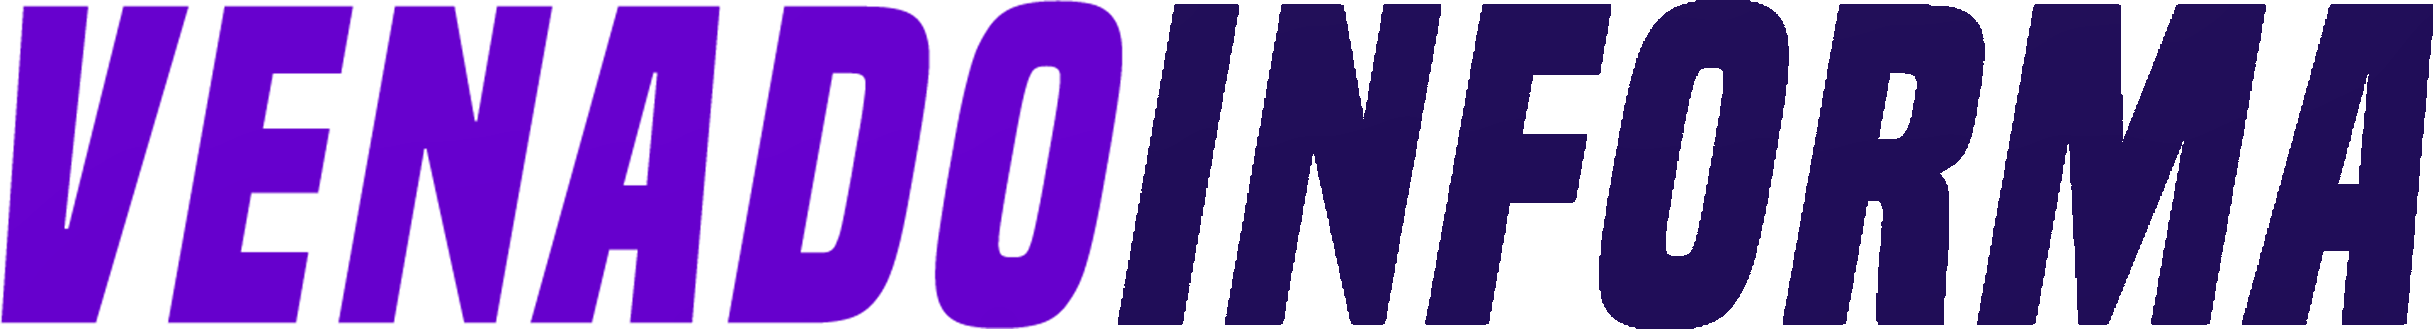 venadoinforma logo